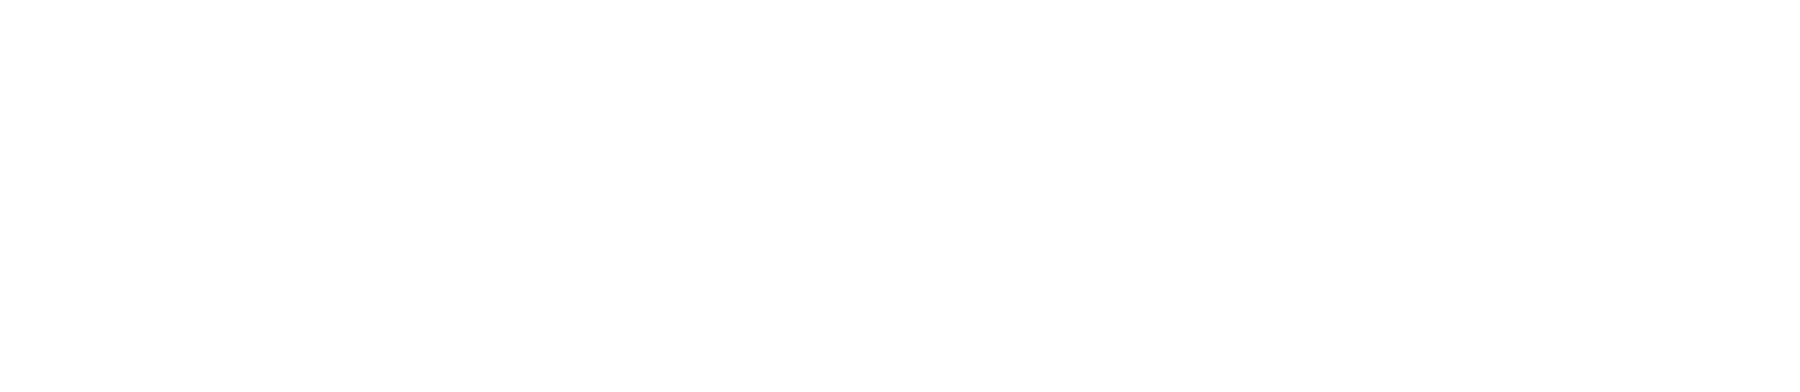 Logo Plan de Recuperación, Transformación y Resiliencia